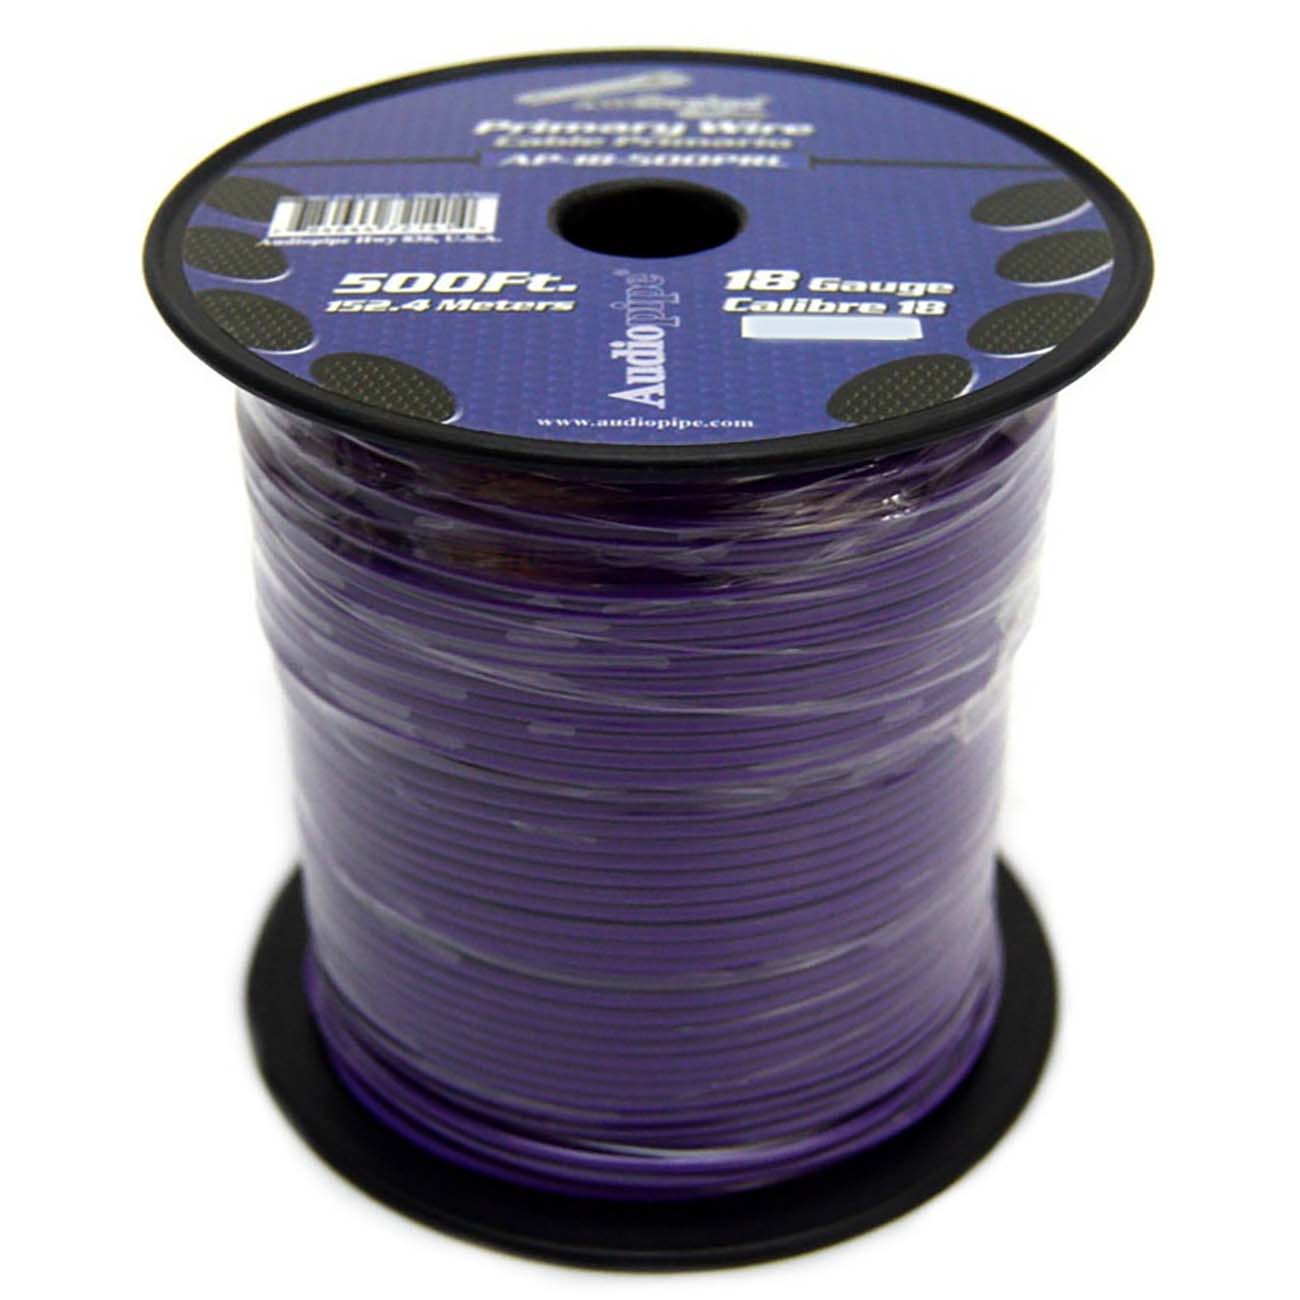 (pw18) Audiopipe 18ga Wire 500' Purple